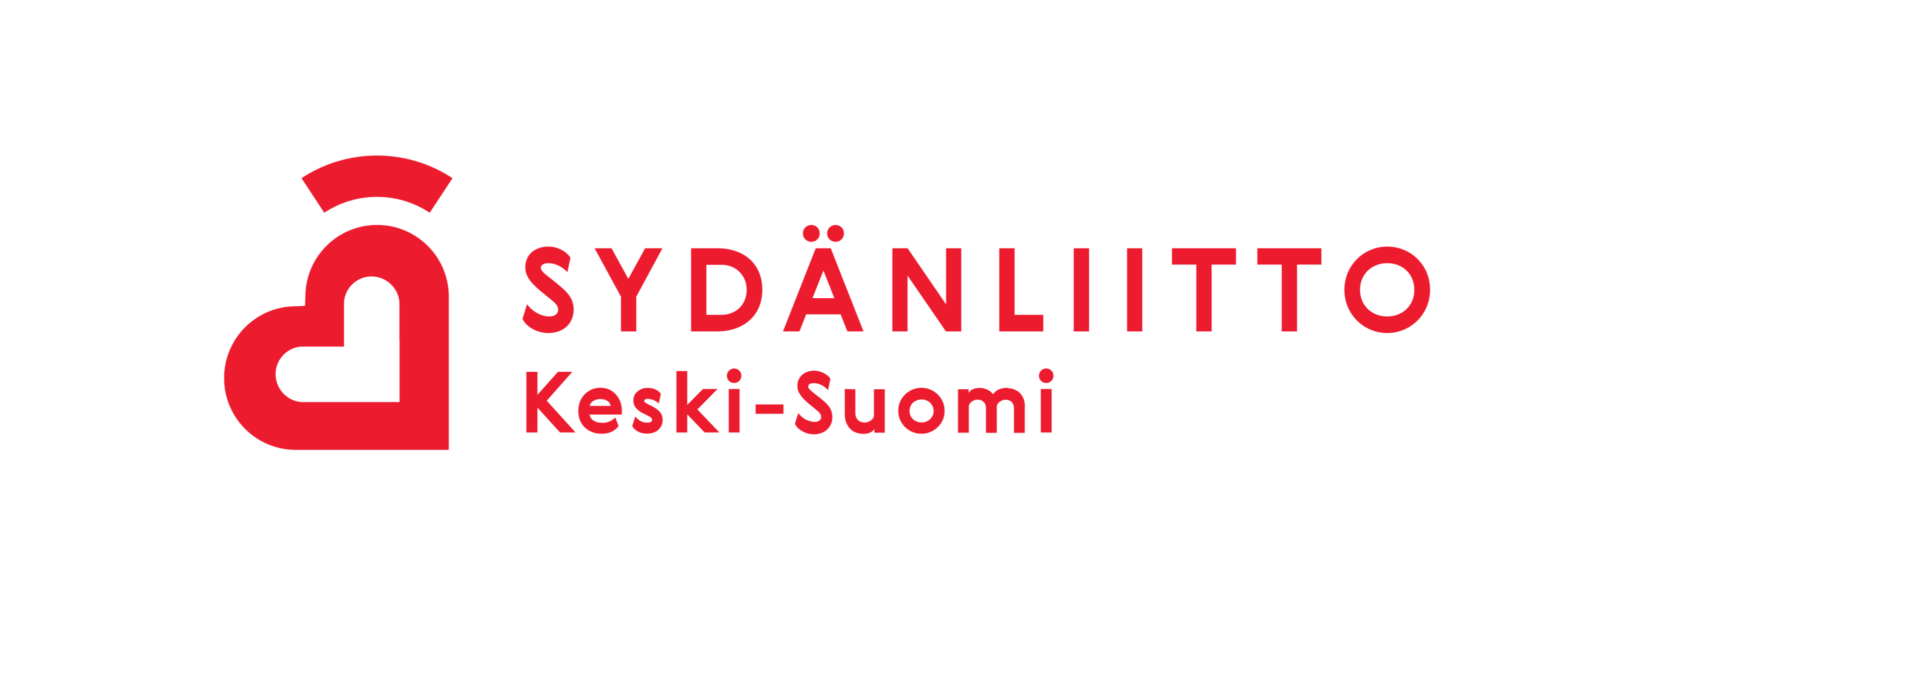 Keski-Suomen Sydänpiiri Ry